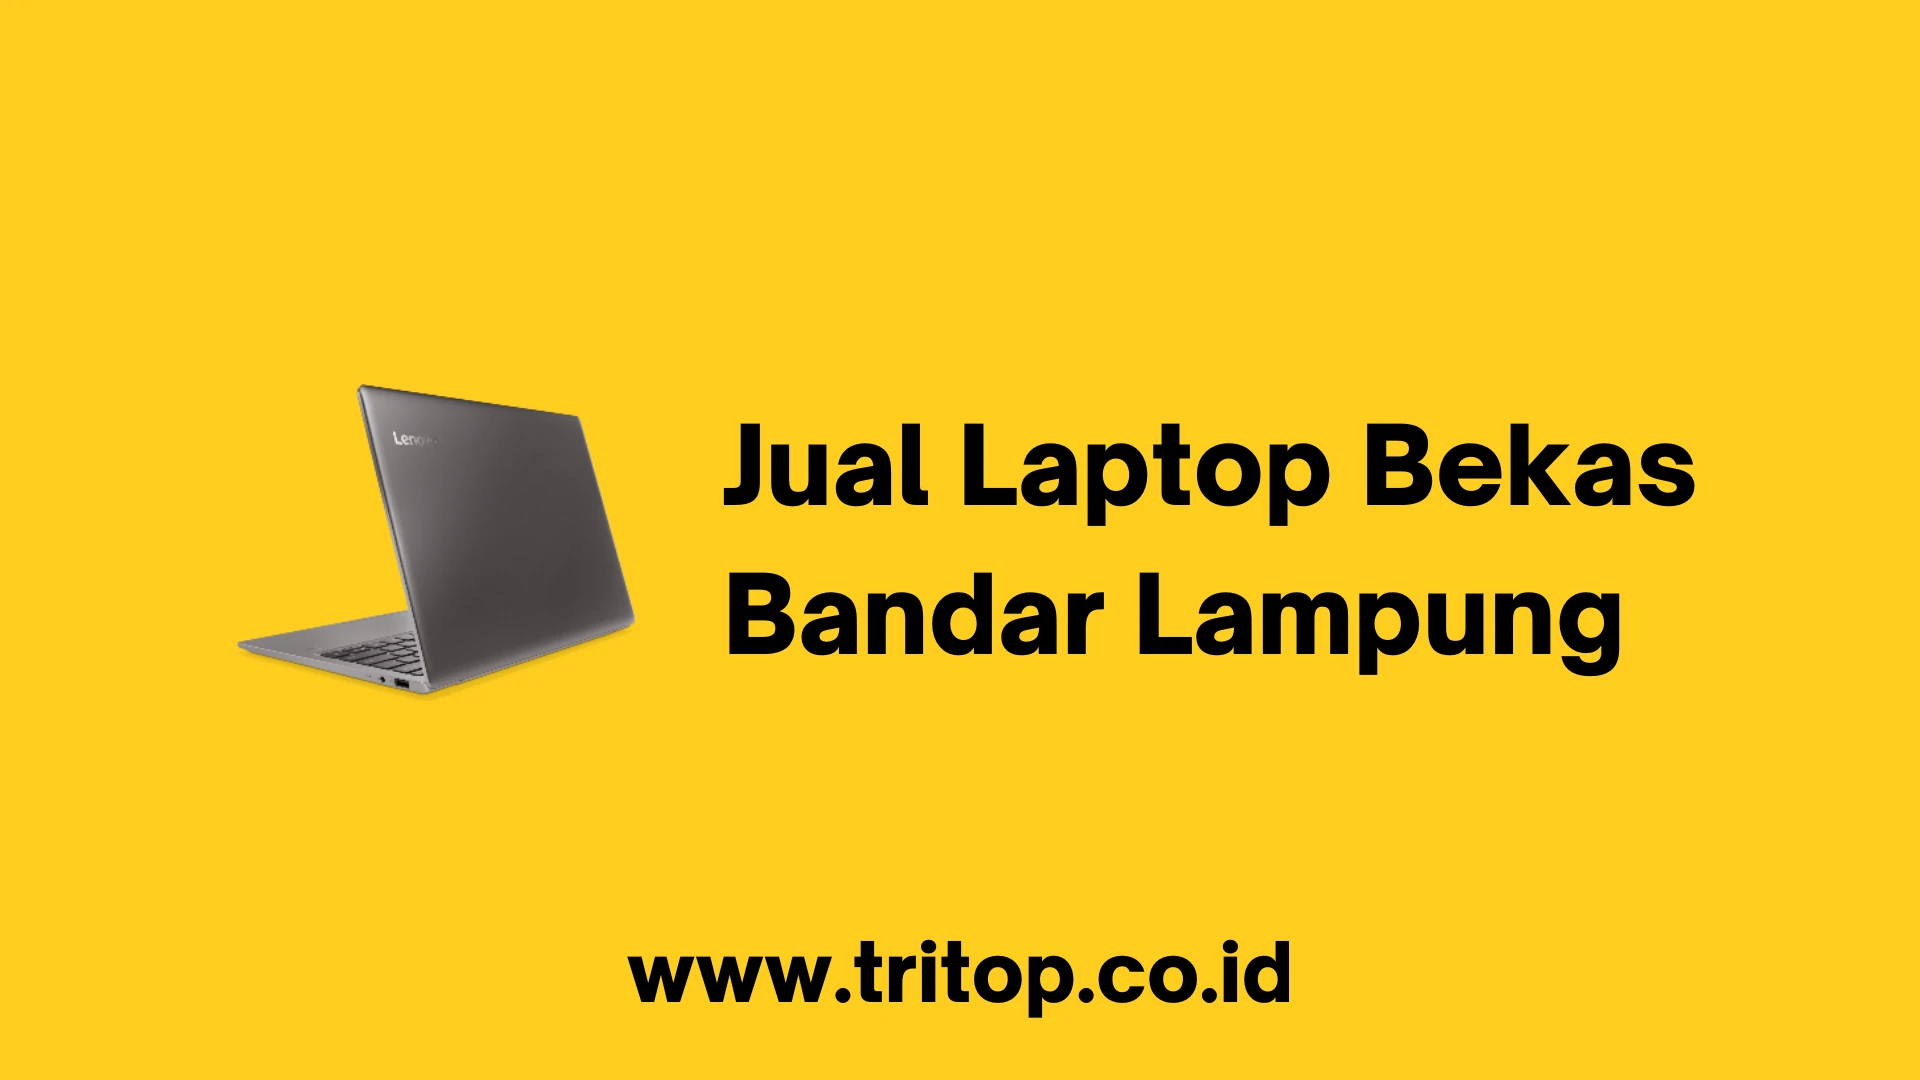 Jual Laptop Bekas Bandar Lampung